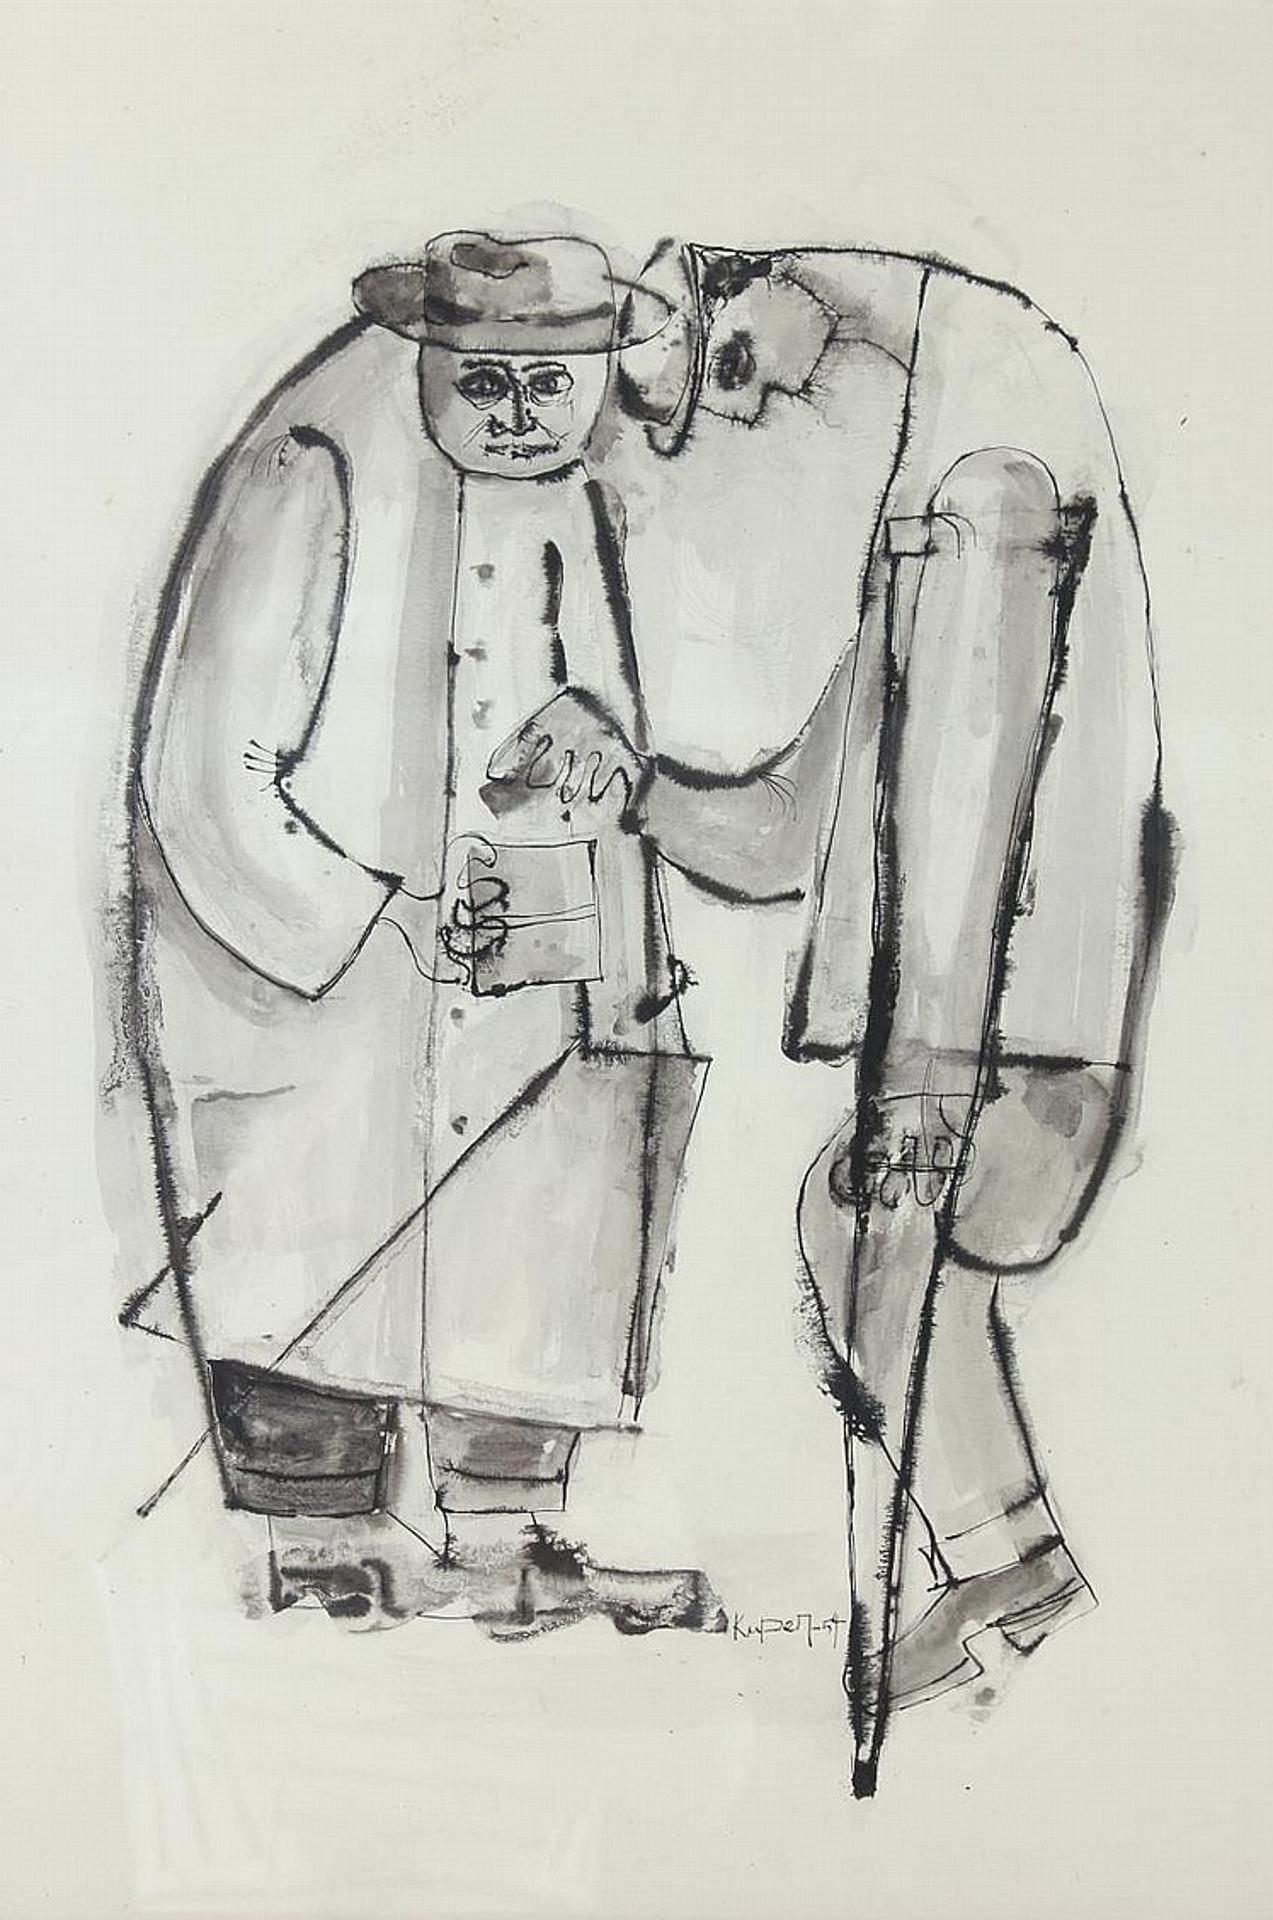 Jack Kuper (1932) - Untitled - Two Men